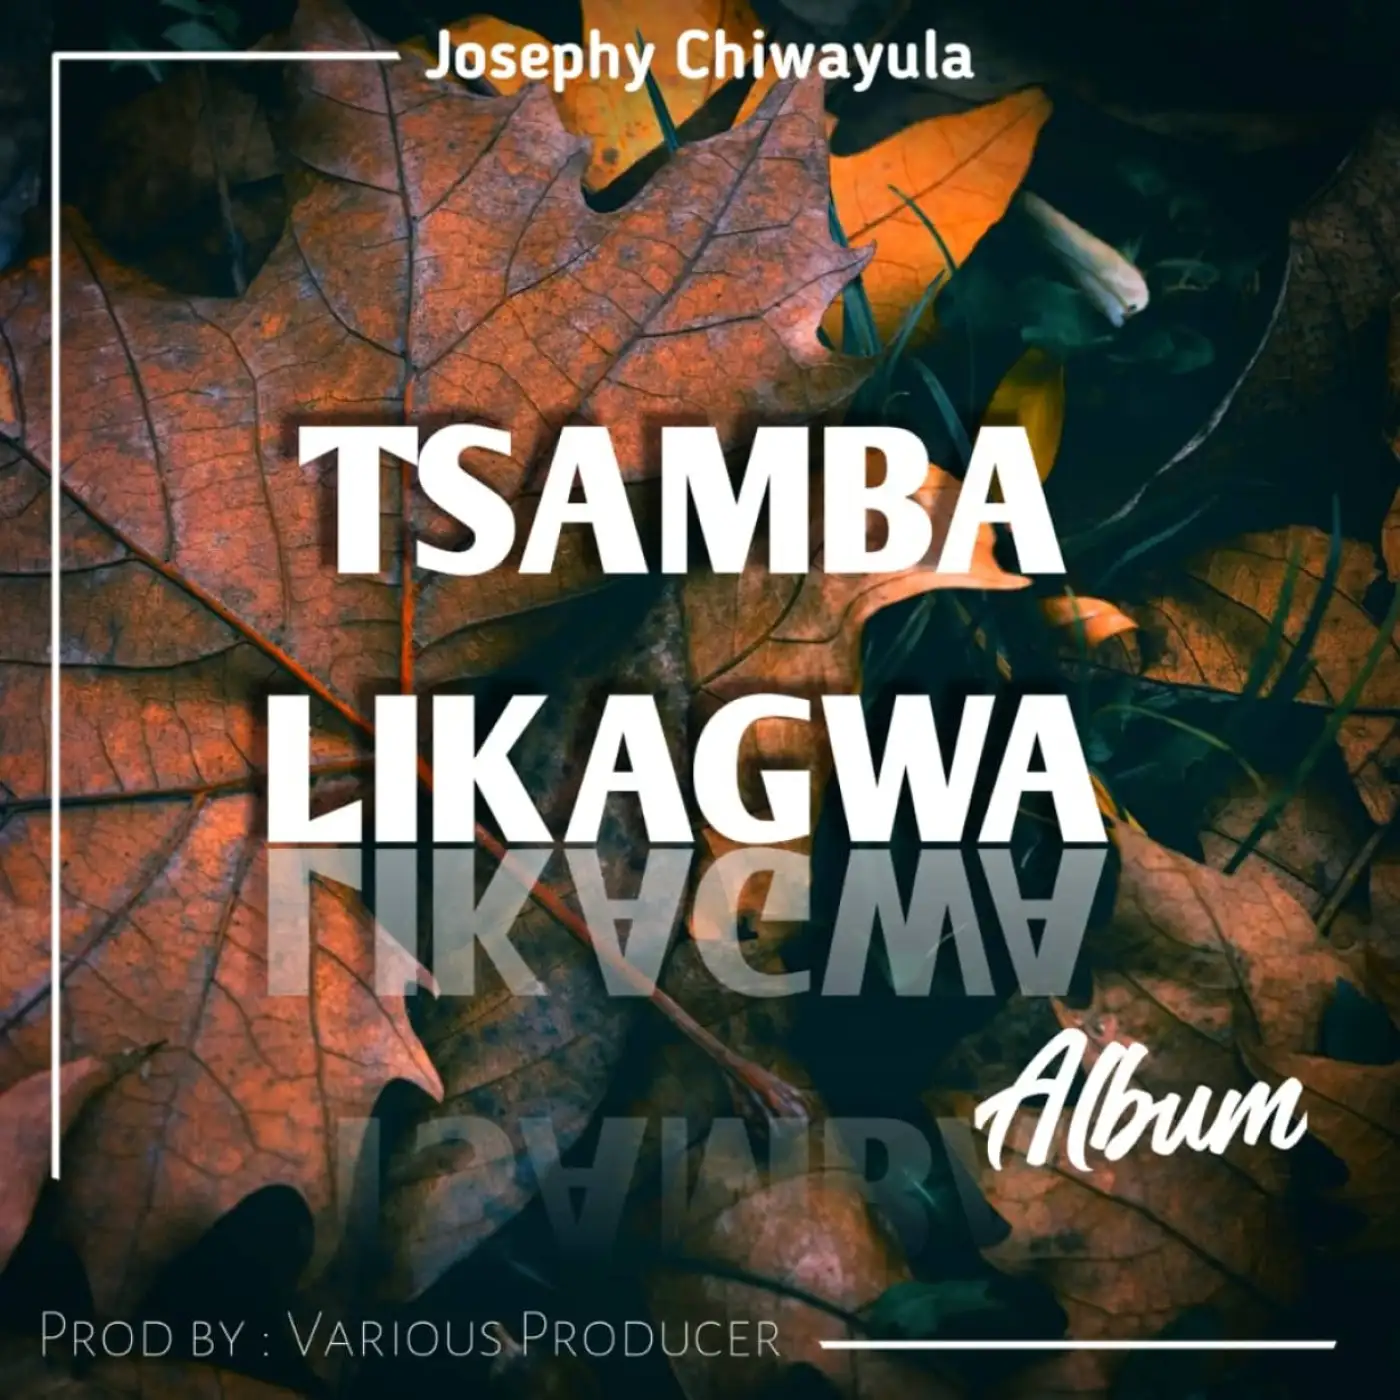 Joseph Chiwayula-Joseph Chiwayula - Dalile-song artwork cover